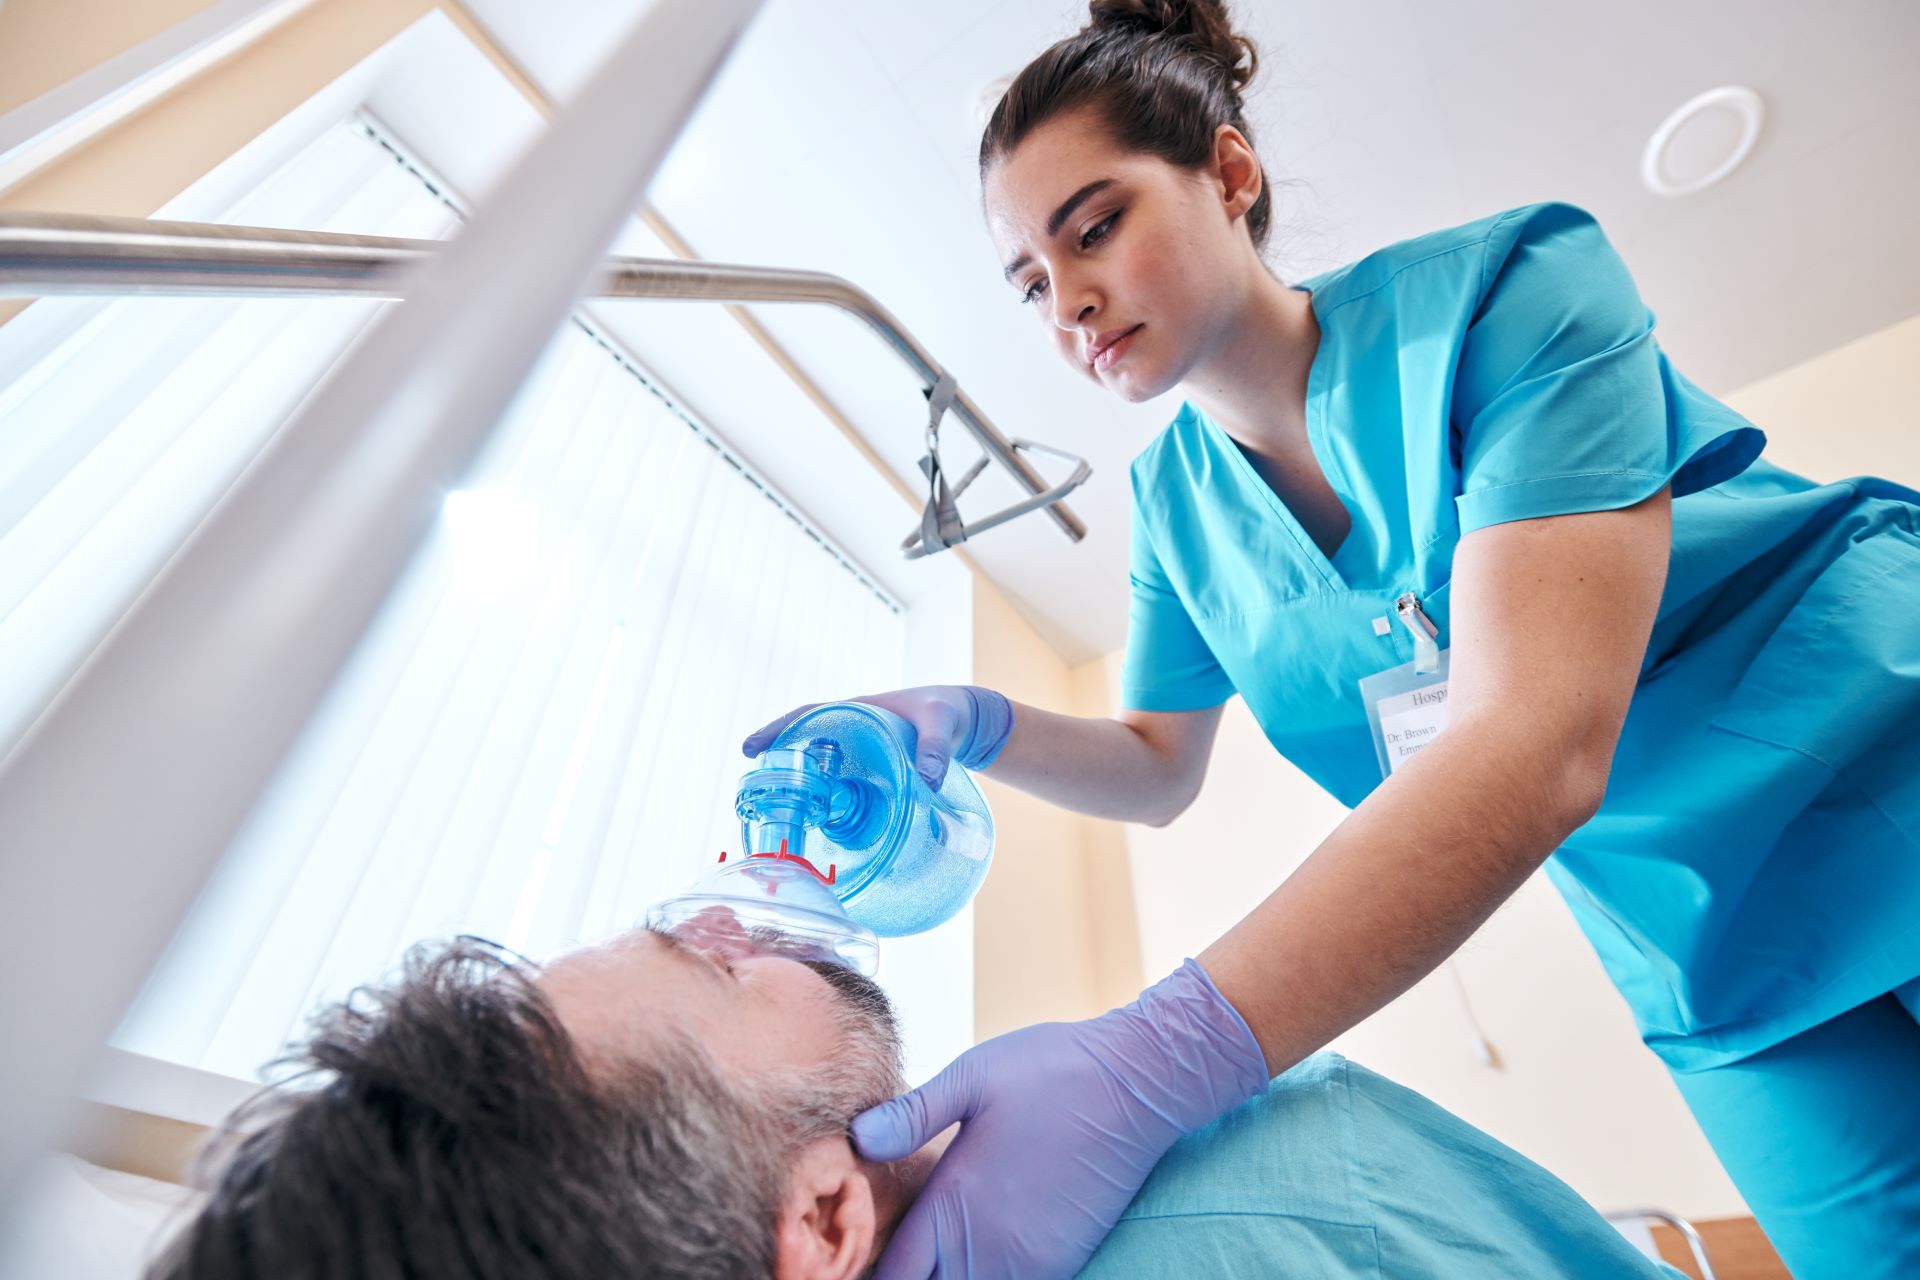 Managing Medical Emergencies in the Dental Practice